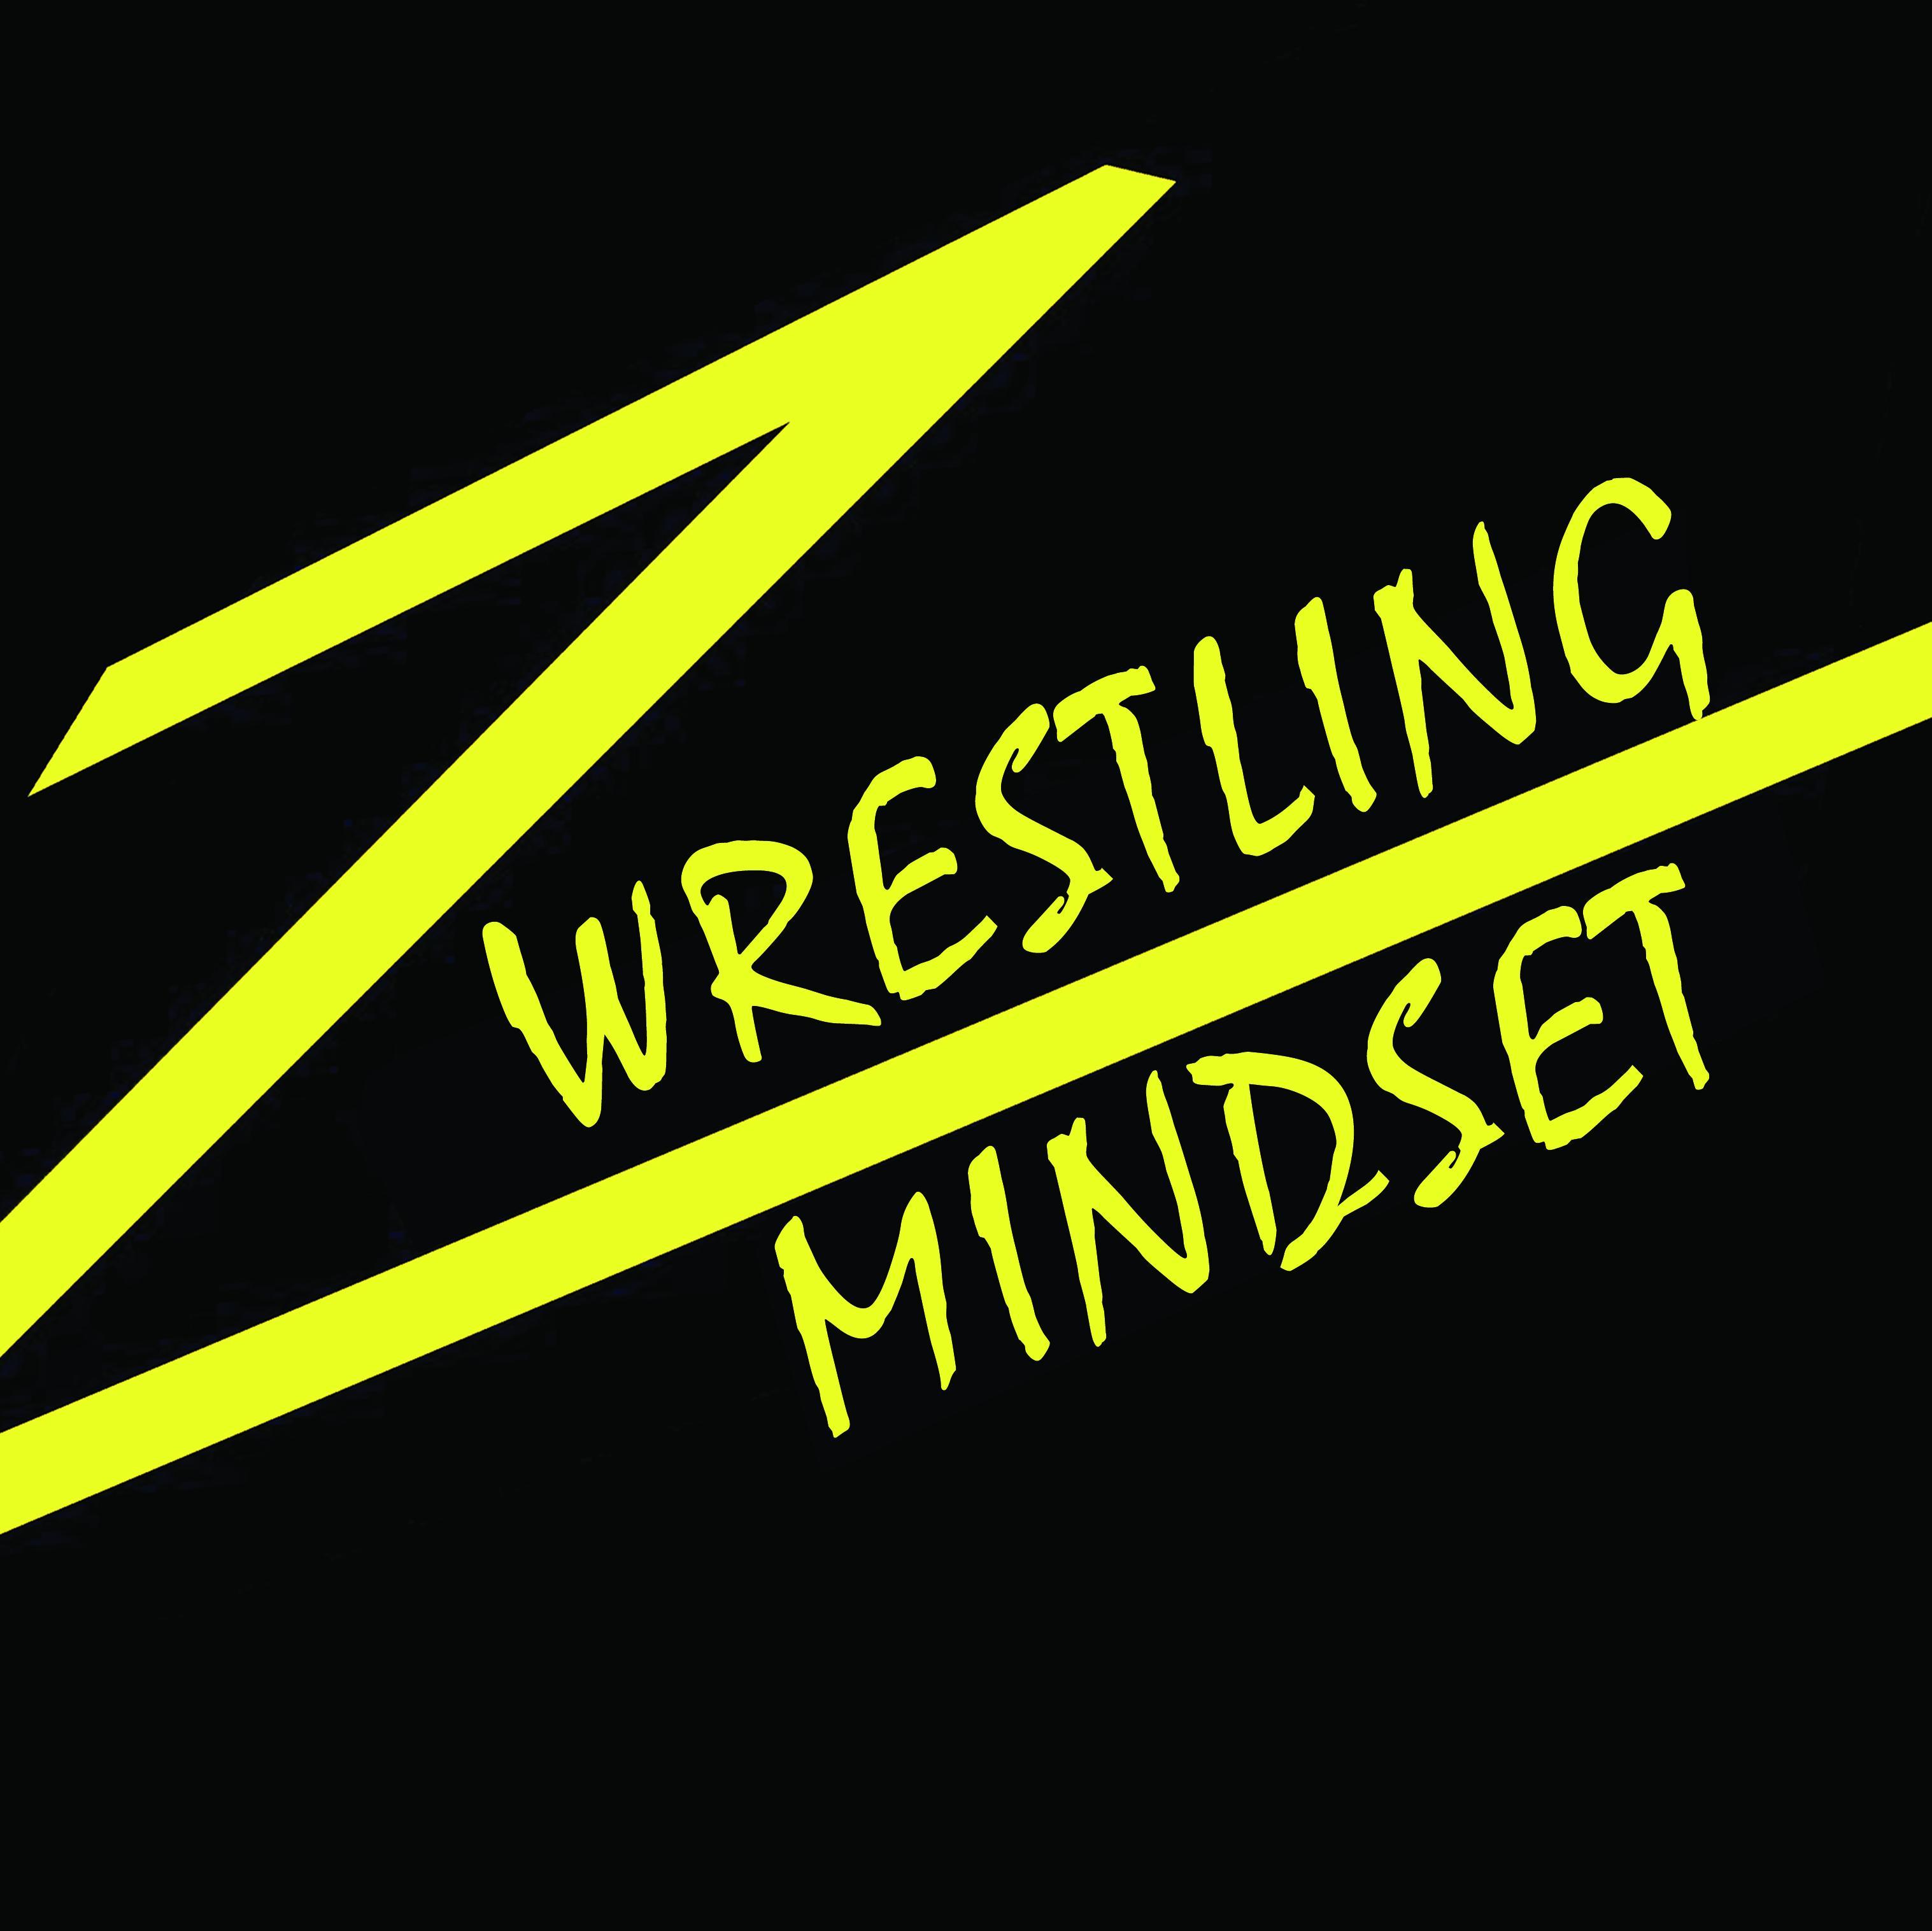 Wrestling mindset podcast and blog